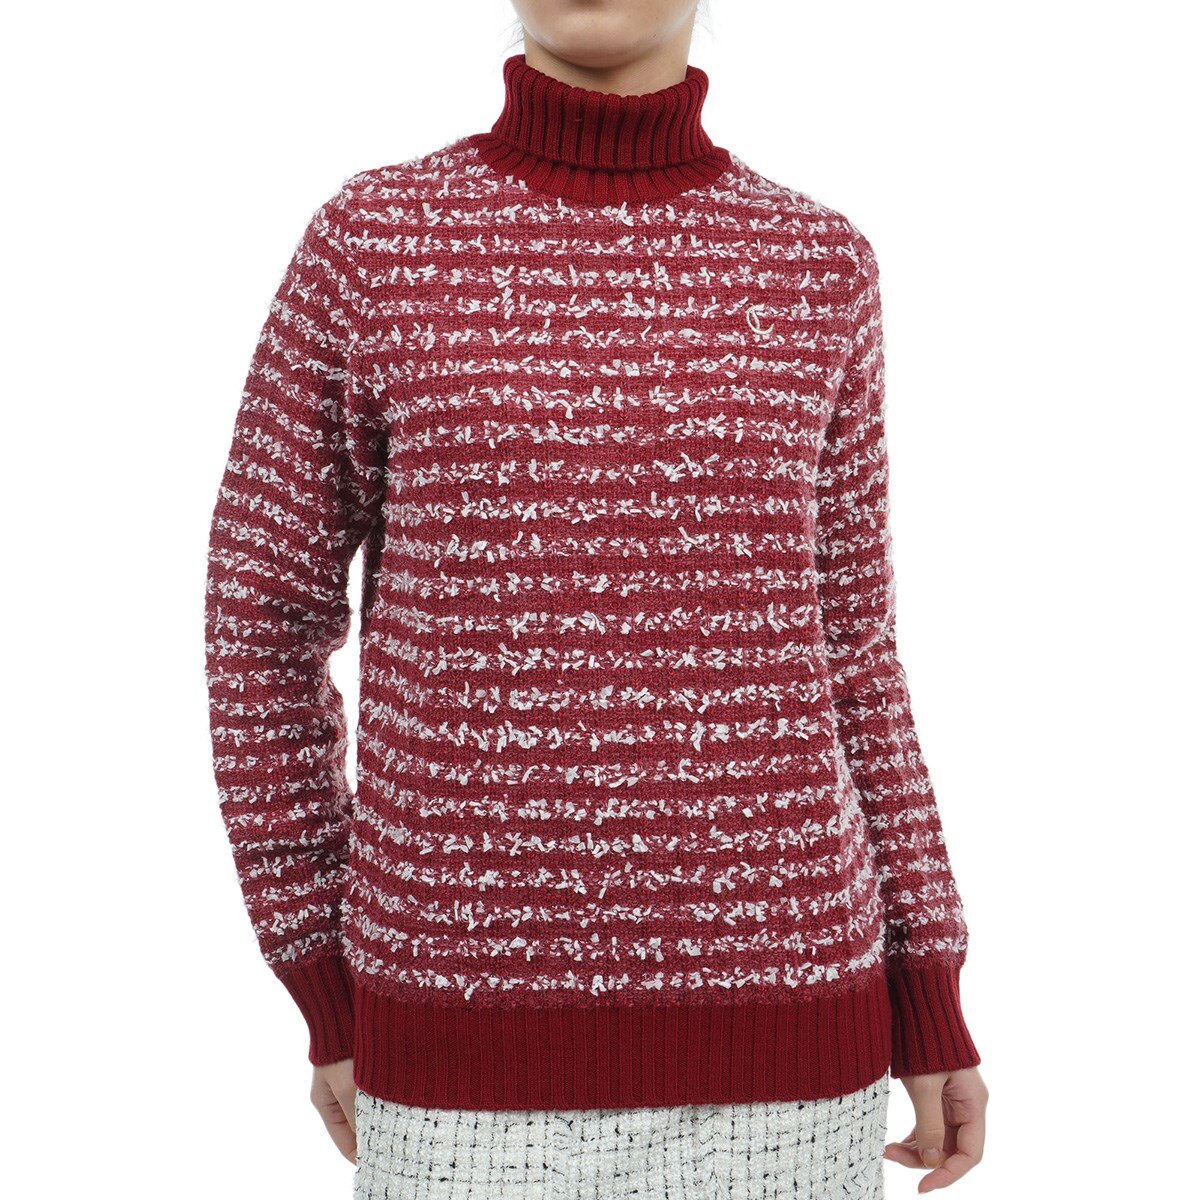 CALLAWAY RED LABEL(キャロウェイ レッドレーベル) セーター